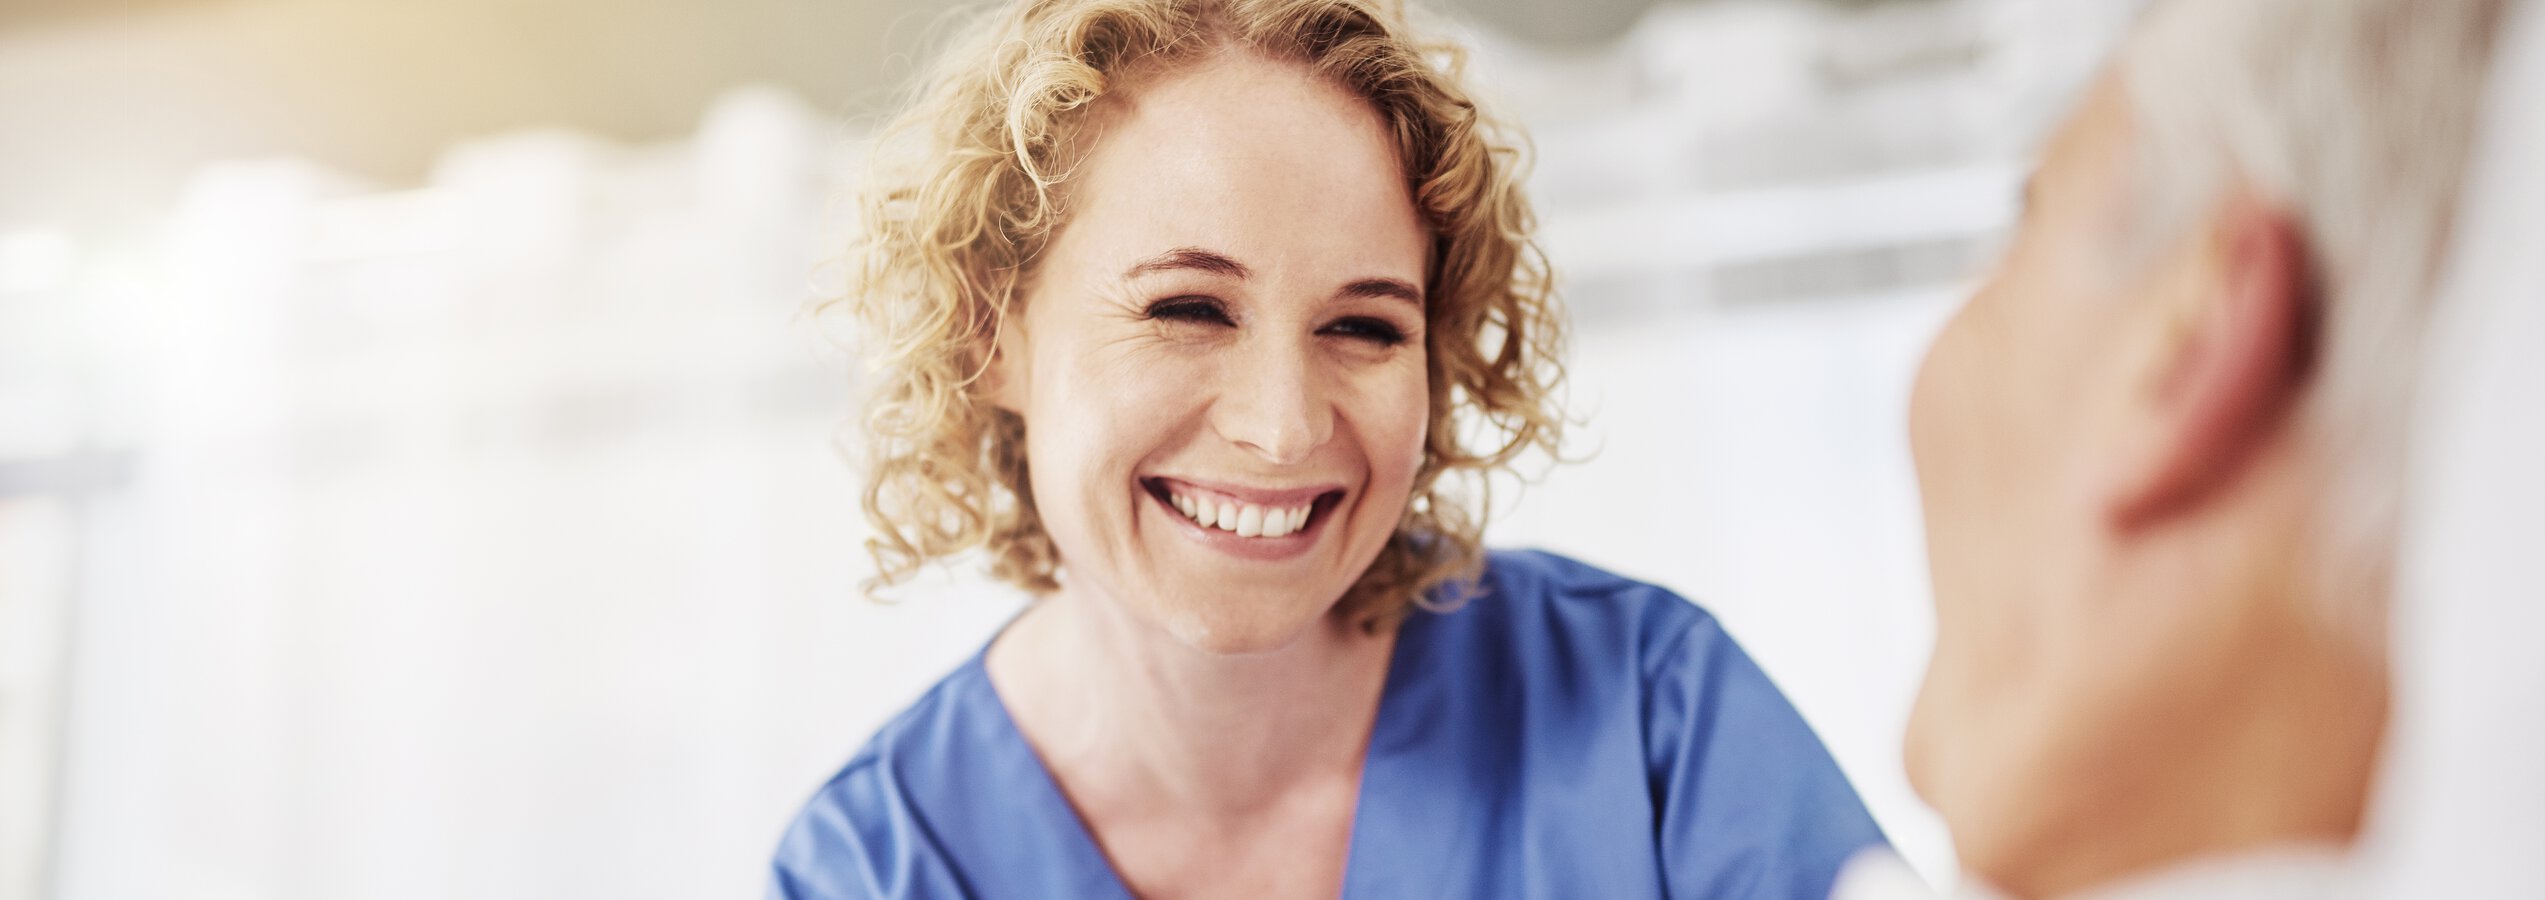 Pflegefachfrau der Caritas München lächelt Patienten freundlich an | © Cecilie Arcurs/Getty Images iStock 610435464